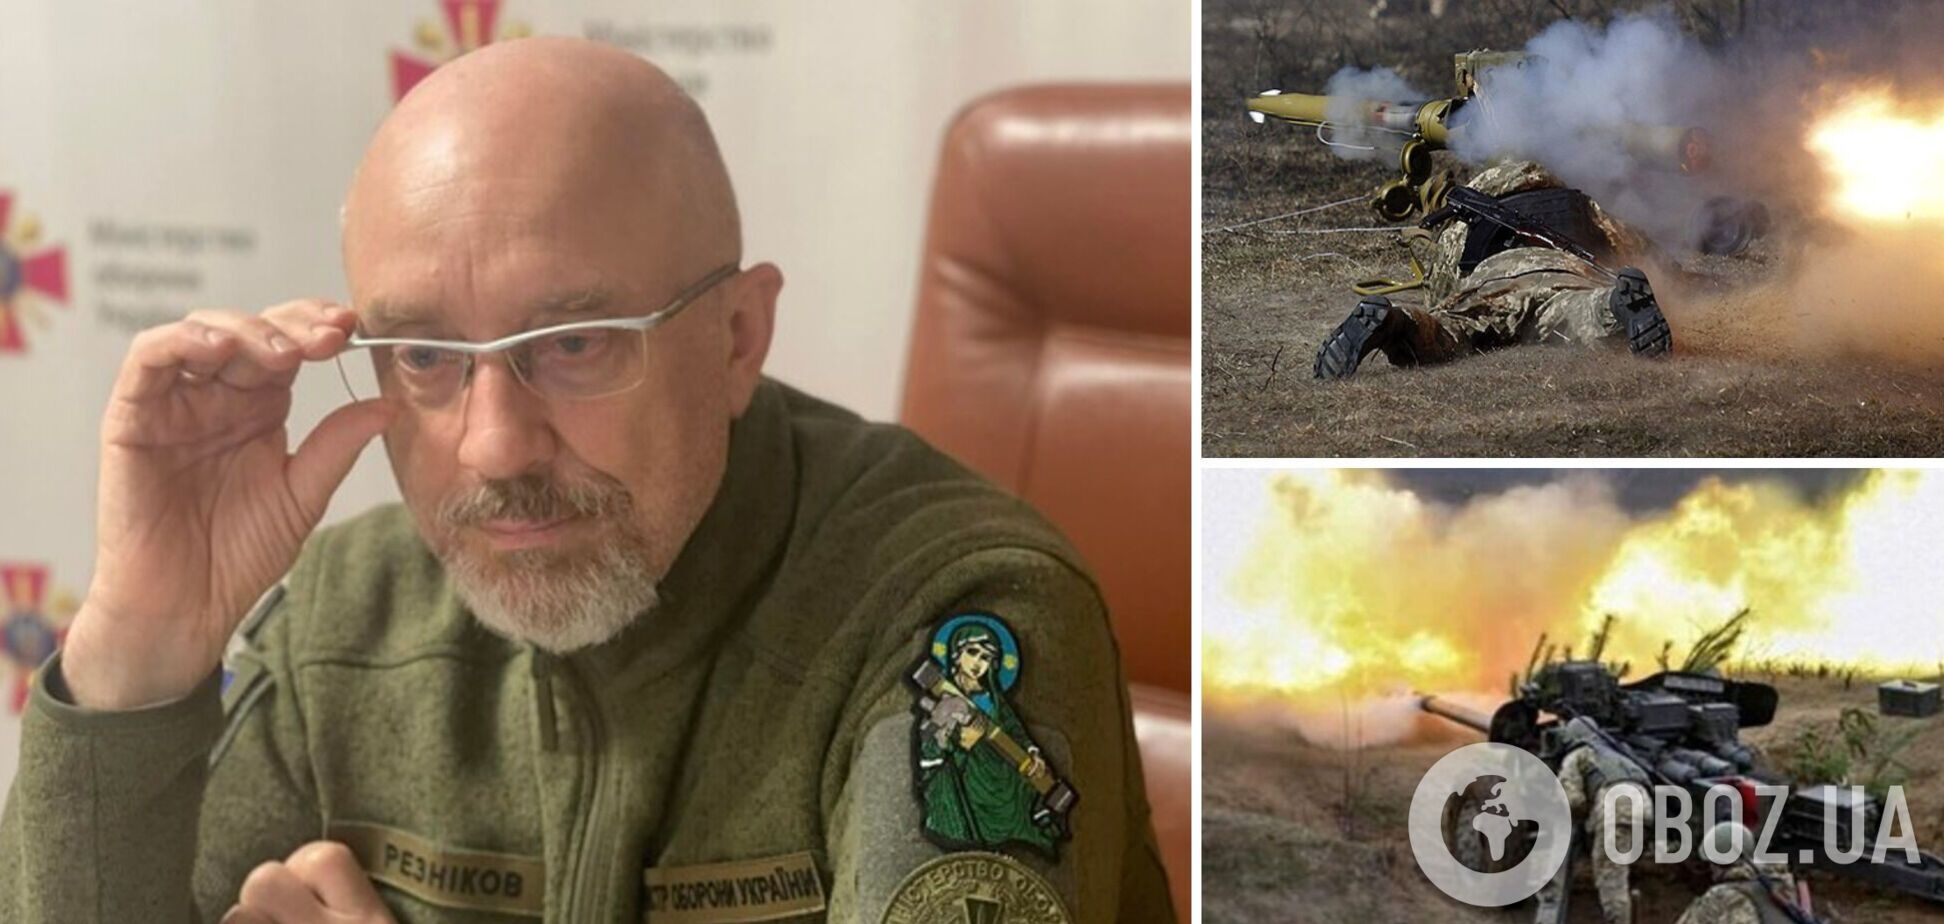 'Ситуація складна': міністр оборони розповів про бої на Донбасі